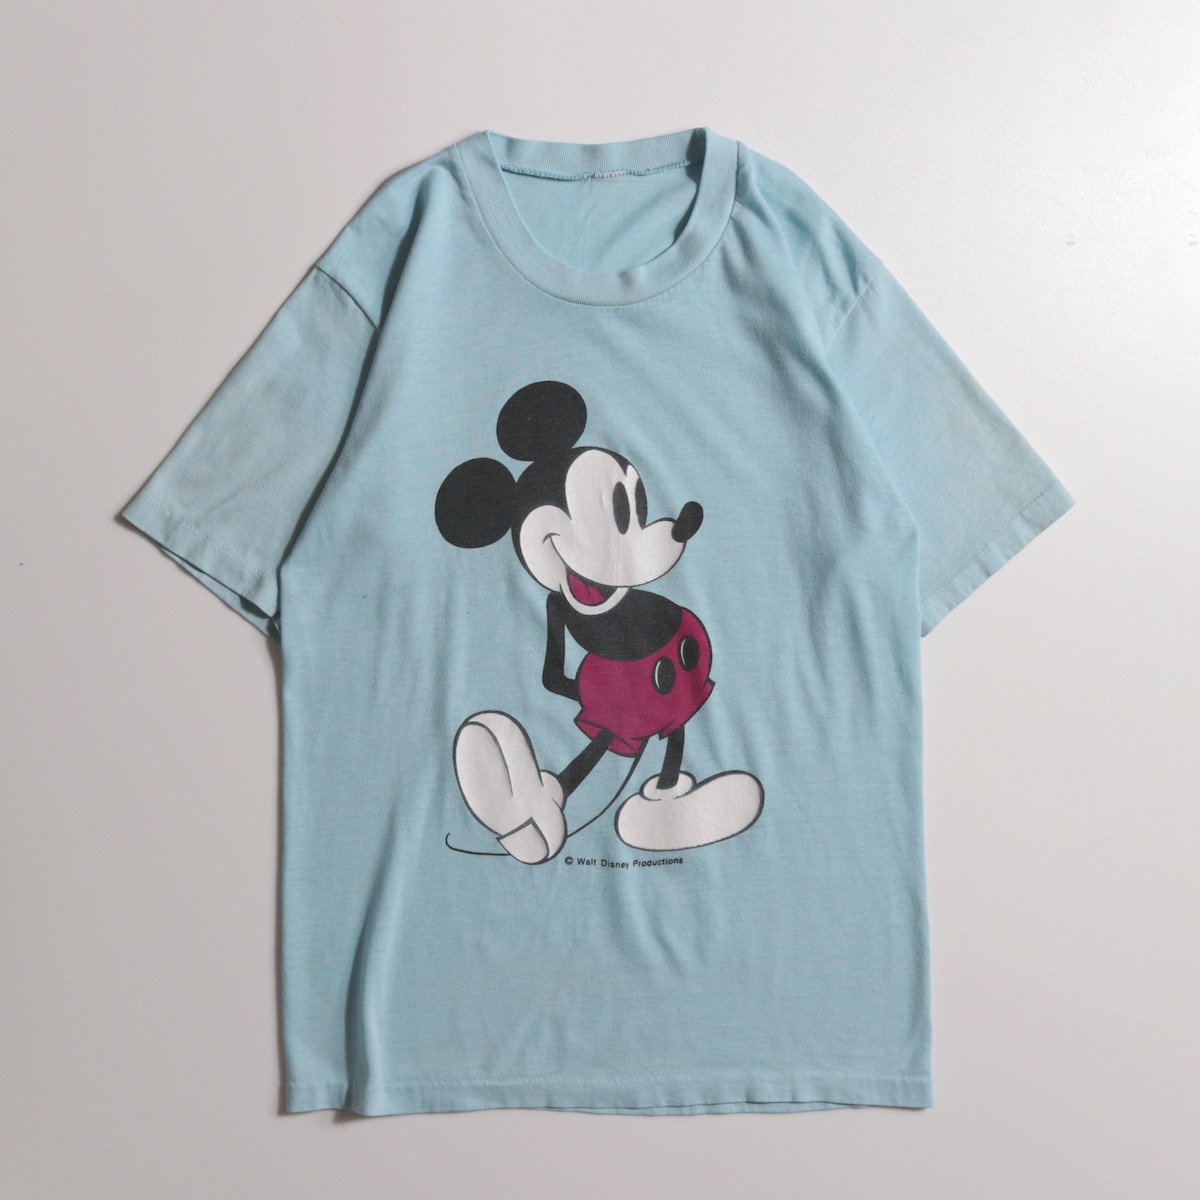 レディース] 1970s ヴィンテージ ミッキーマウス Tシャツ ライトブルー 